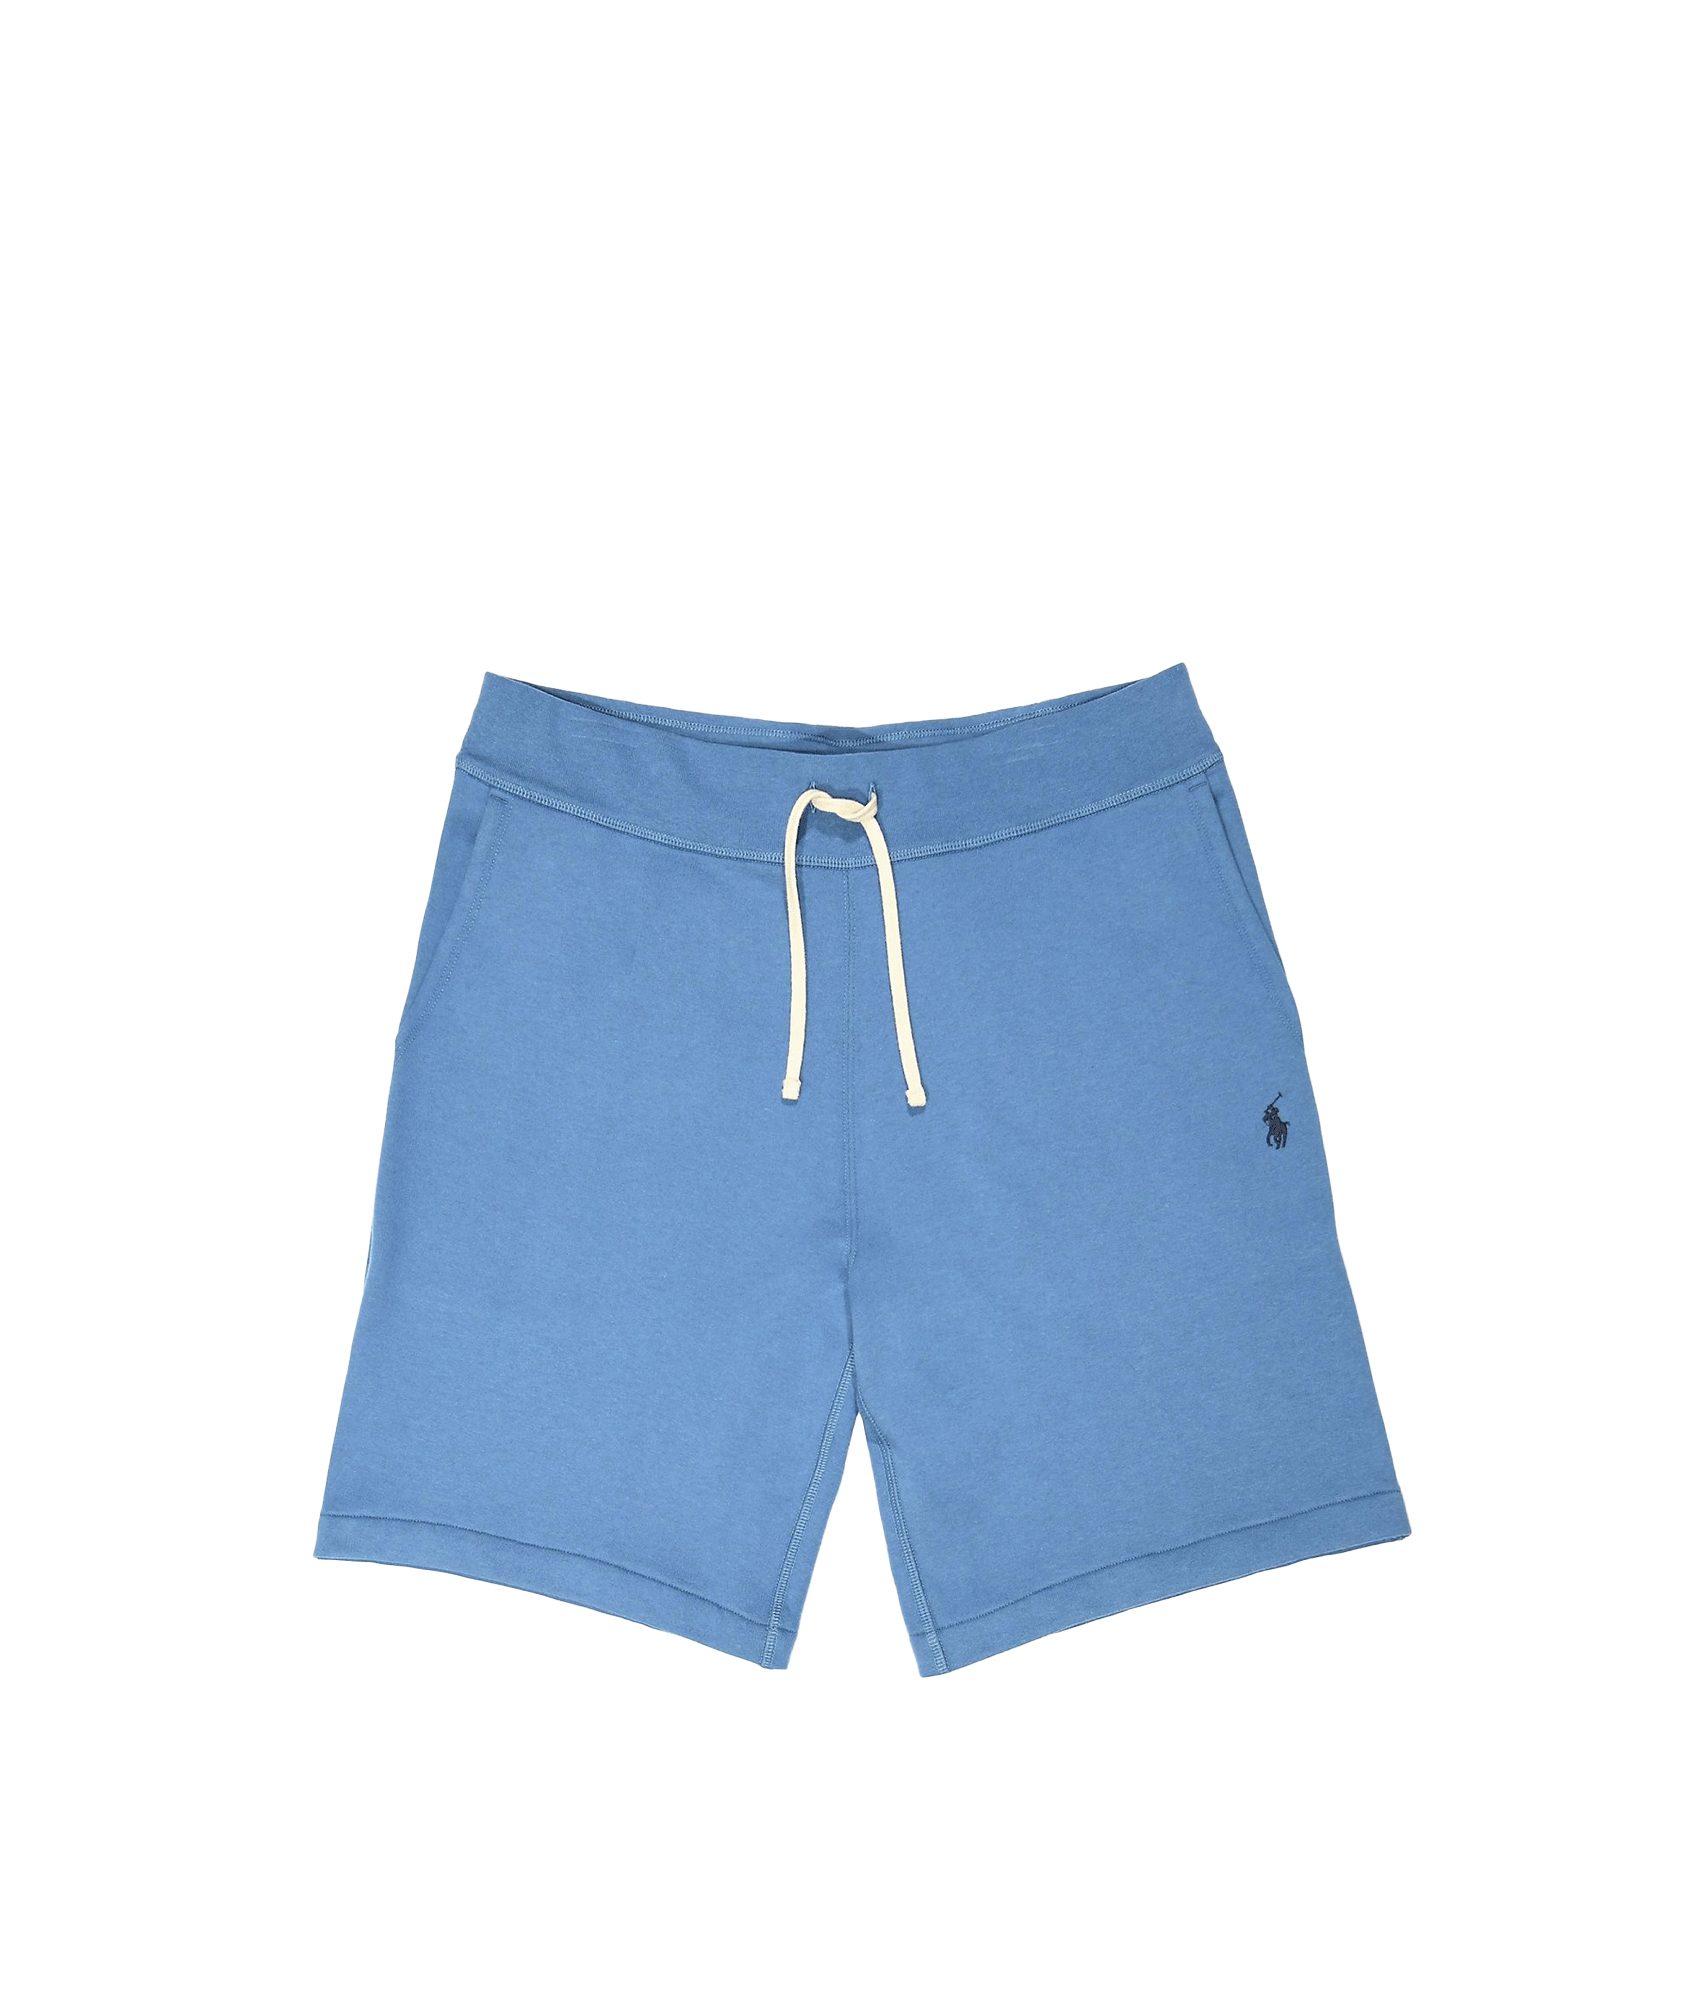 Athletic Shorts - Blue